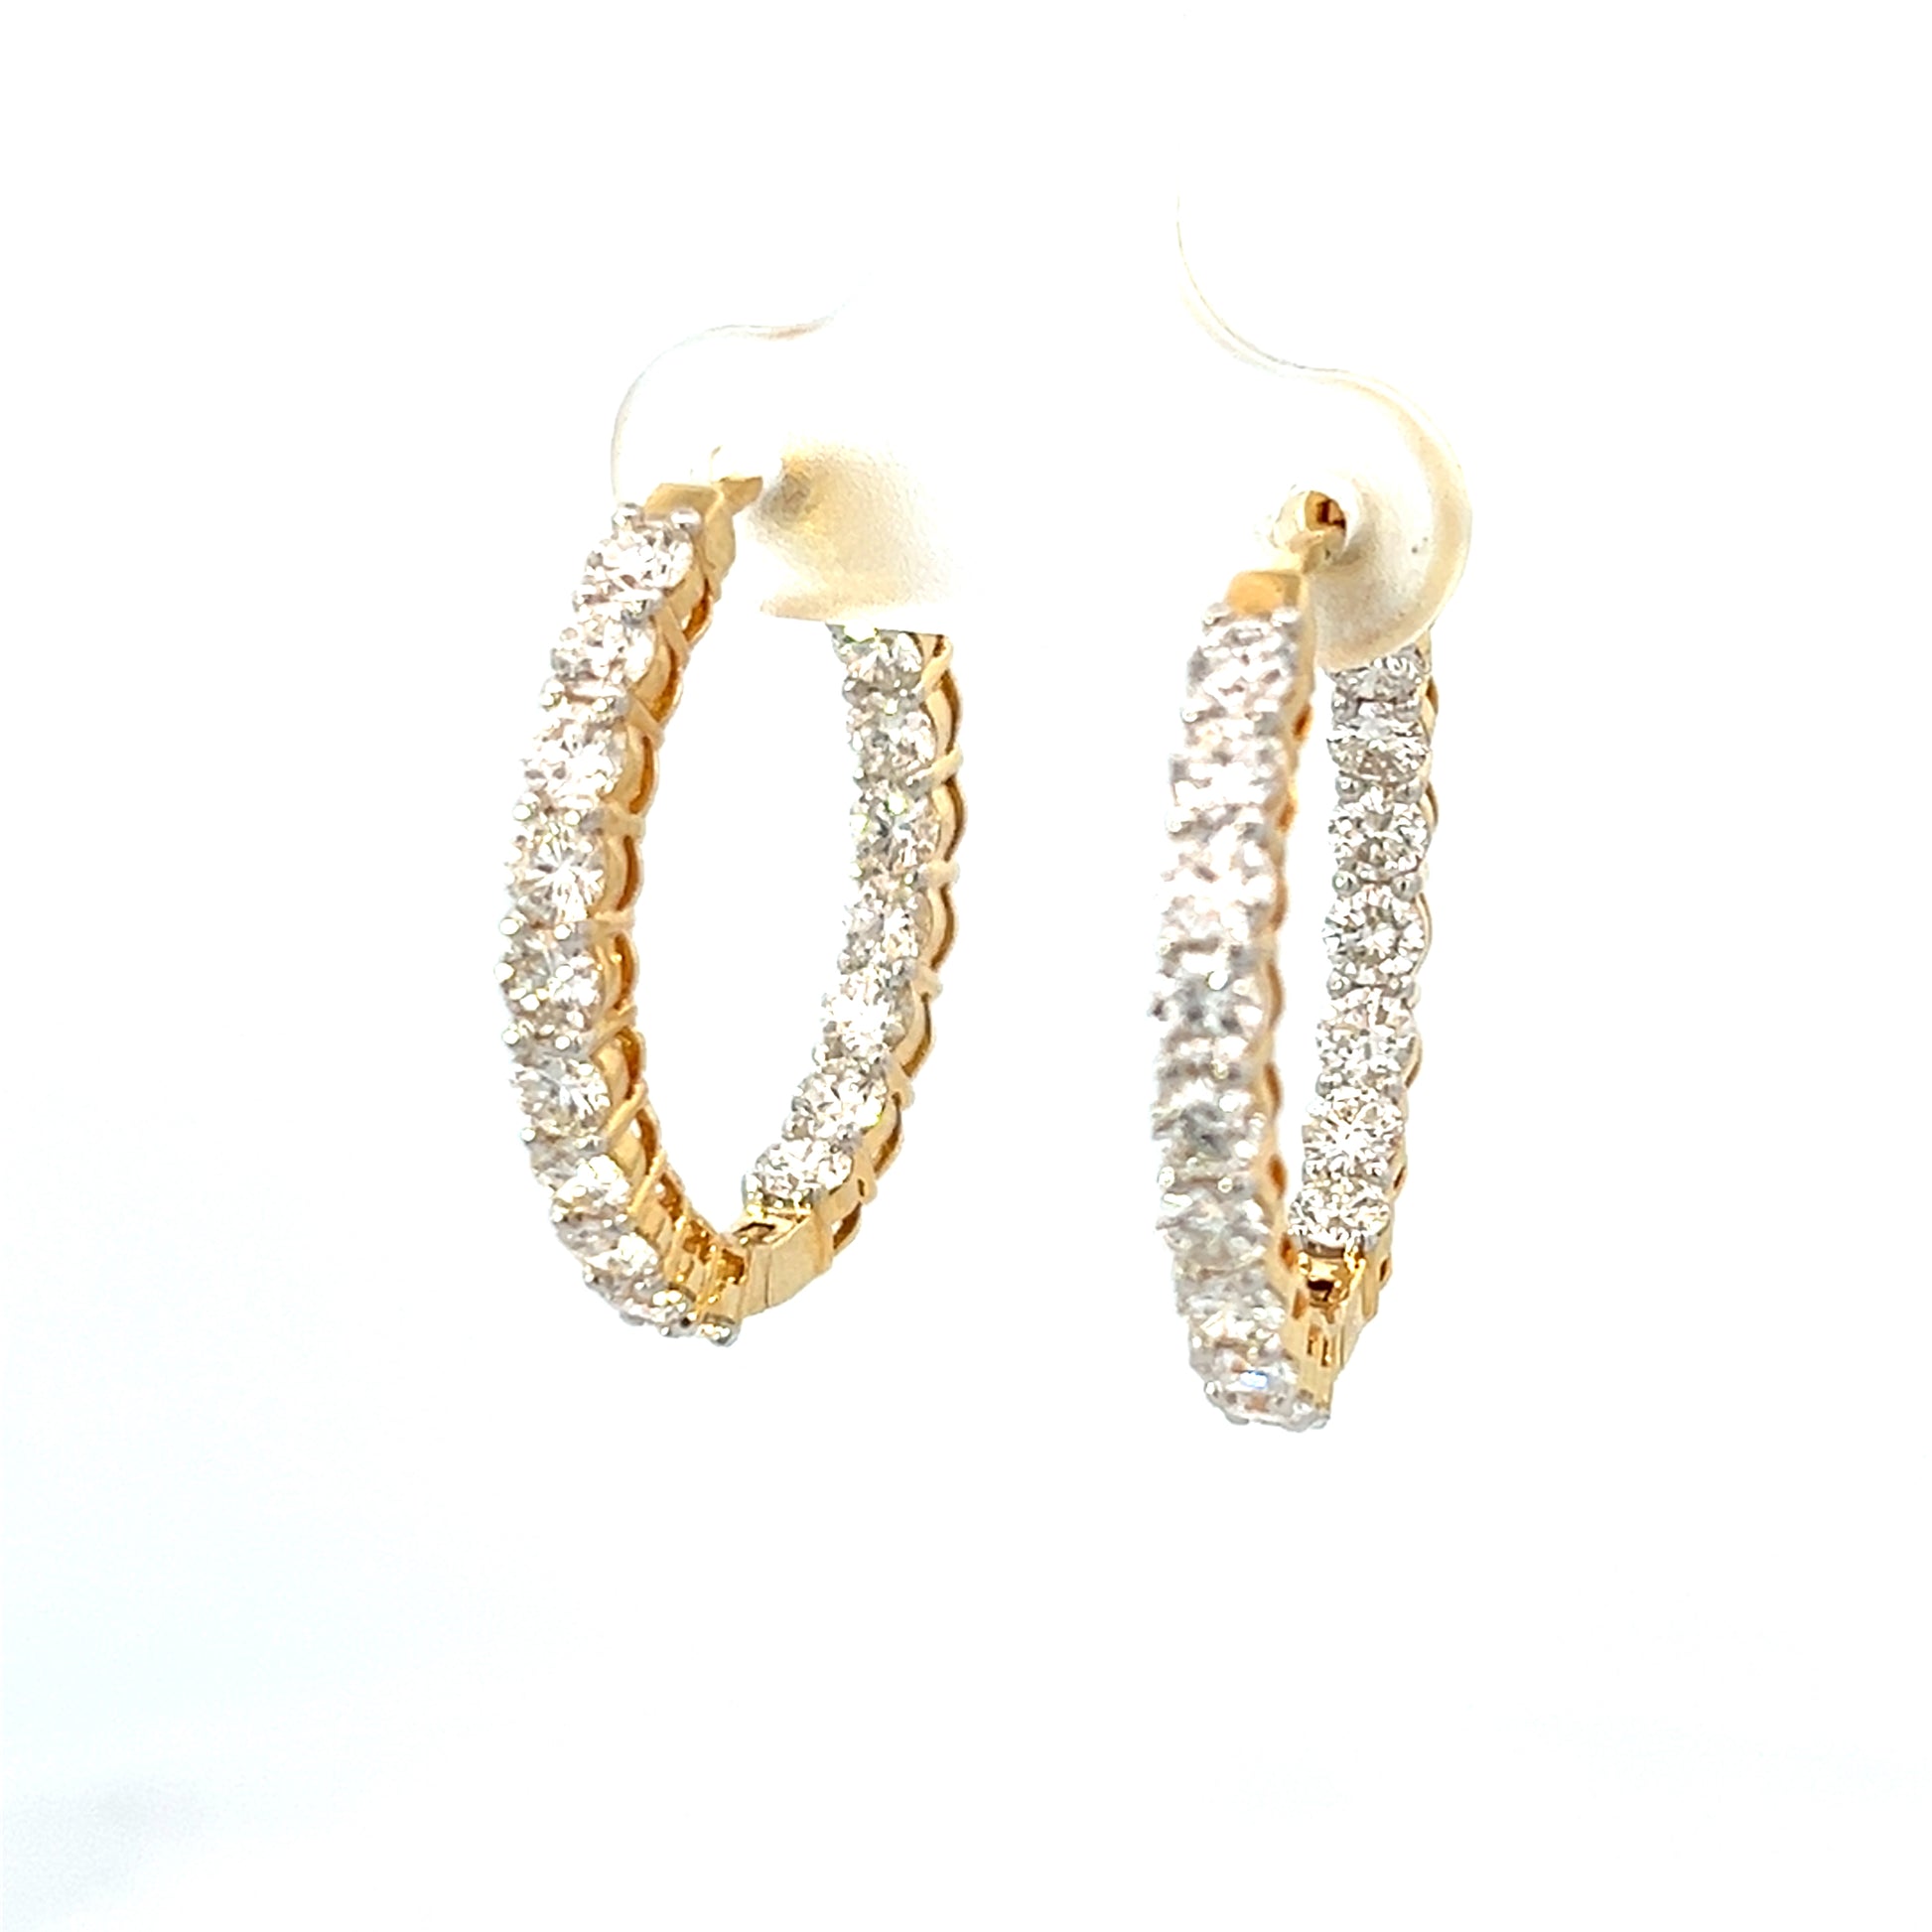 2.31cttw Gold Diamond Hoop Earrings | Small Hoop Earrings With Diamonds | 25mm Gold Hoop Earrings | Gold Hoop Earrings With Diamonds